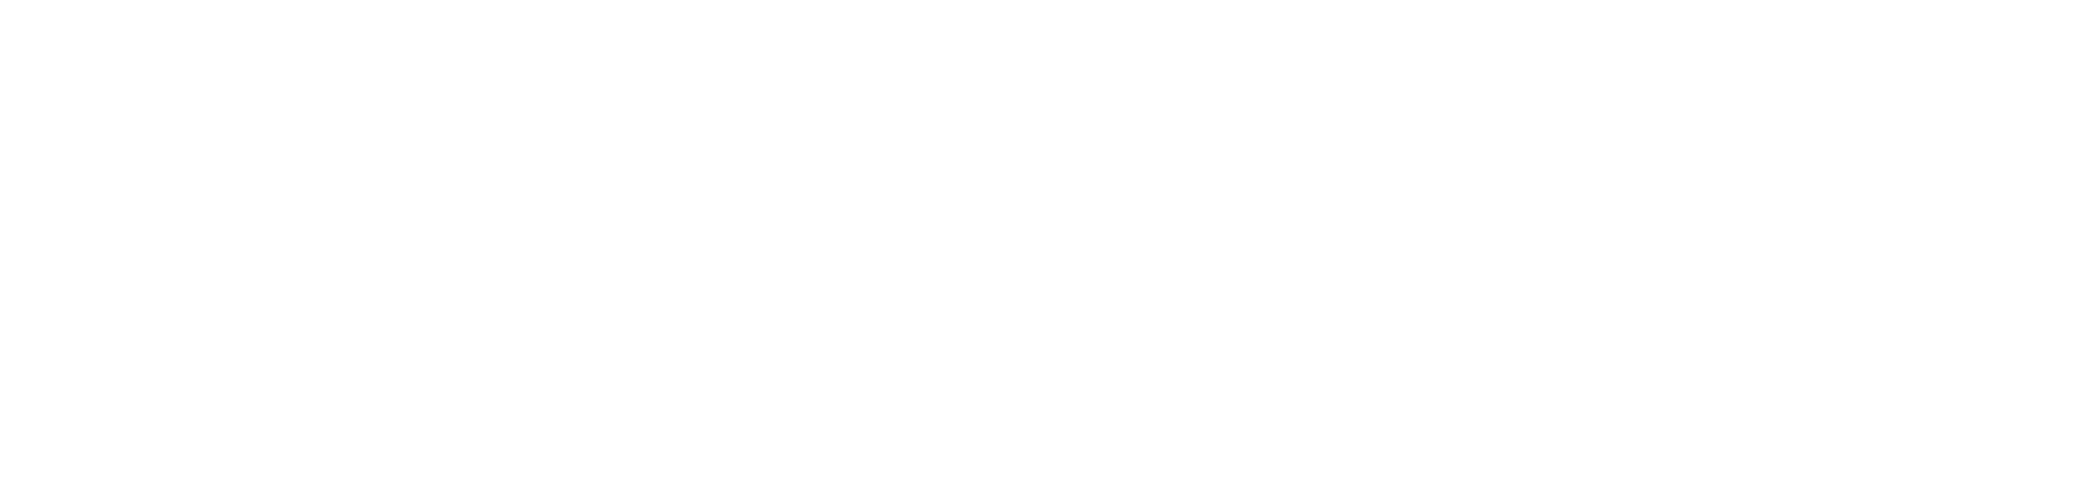 Journal of Irish and Scottish Studies logo